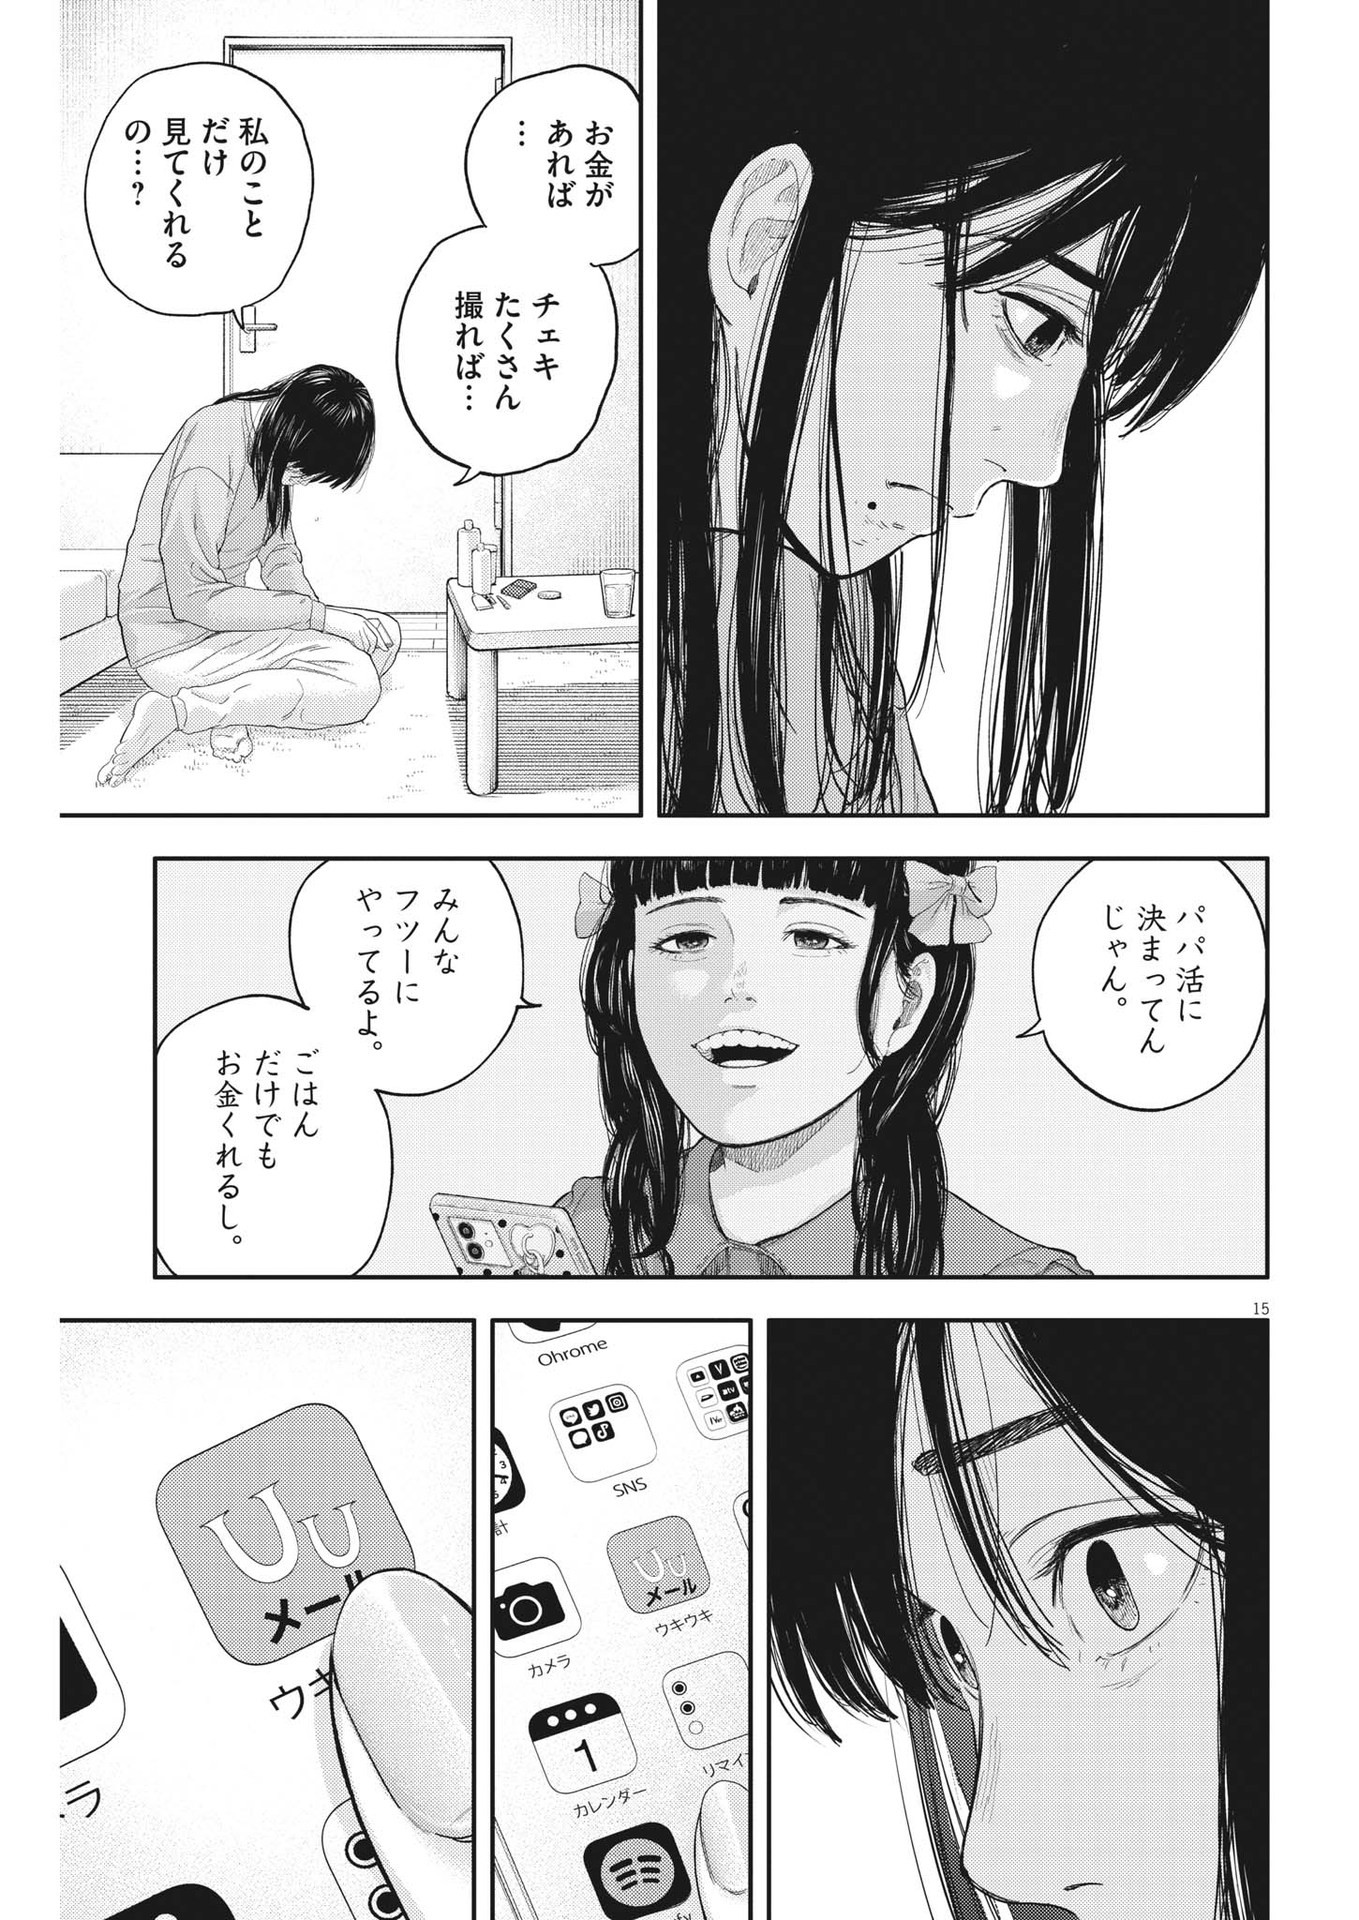 Yumenashi-sensei no Shinroshidou - Chapter 10 - Page 15